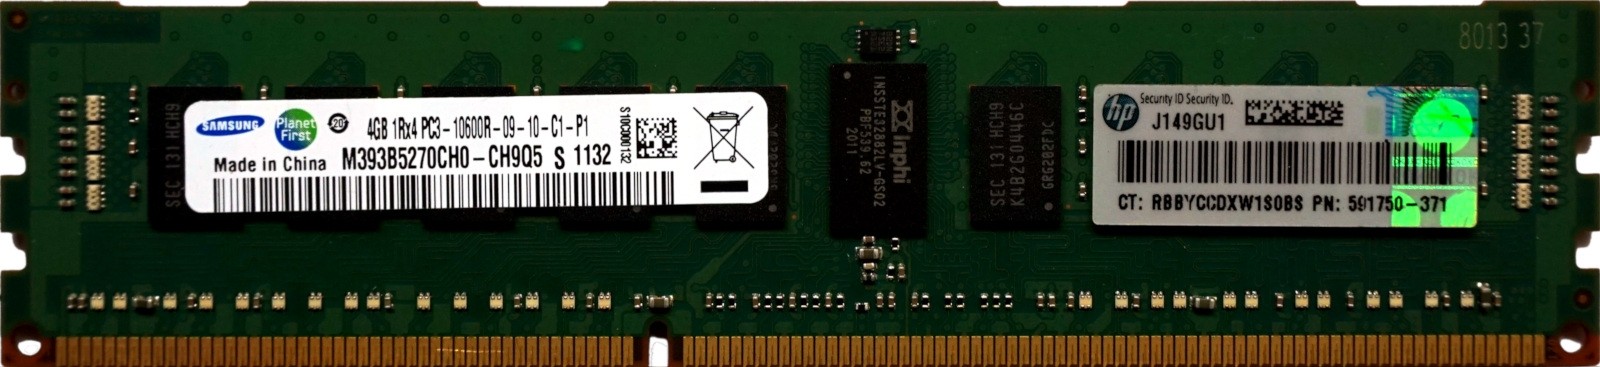 HP (591750-371) - 4GB PC3-10600R (DDR3-1333Mhz, 1RX4)